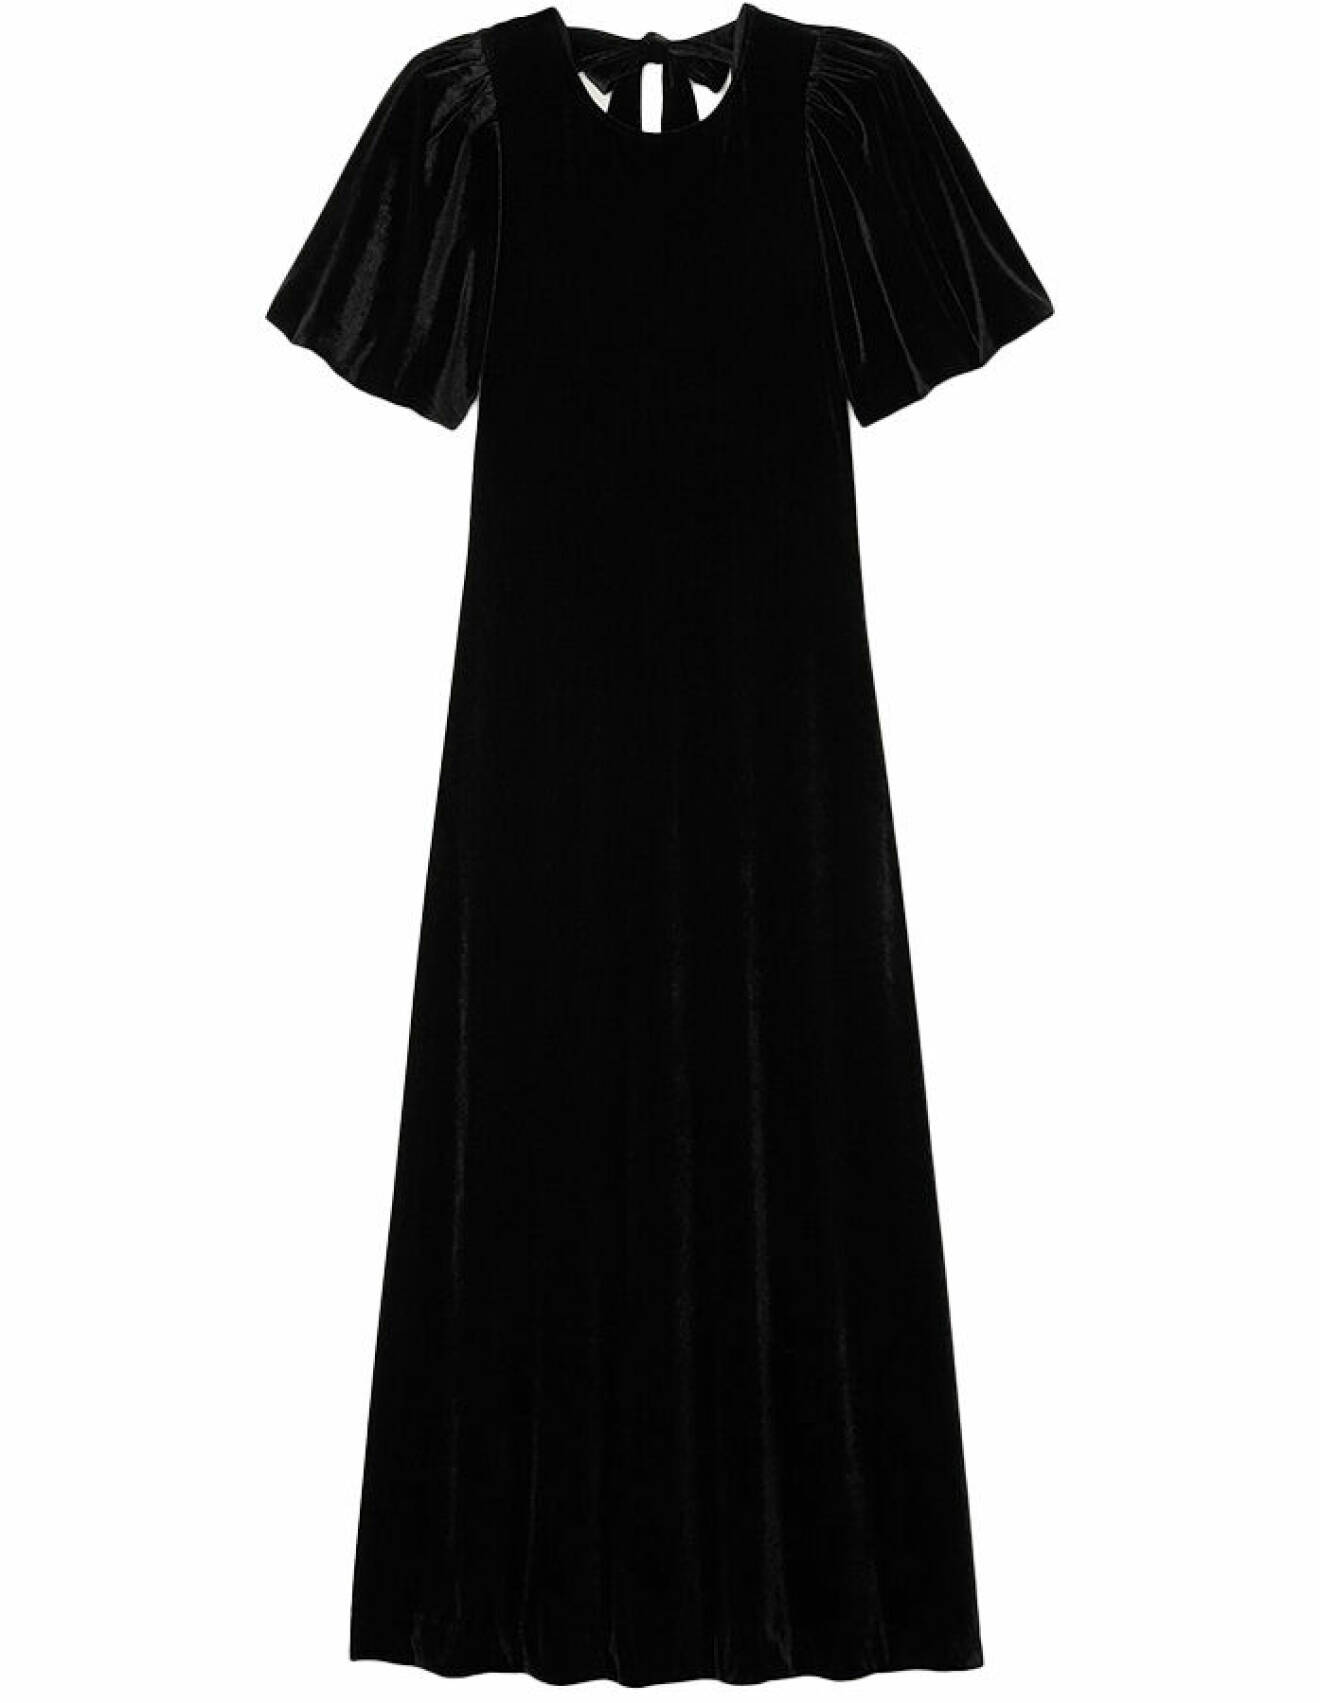 svart maxiklänning i sammet med rosett baktill och korta ärmar från inwear